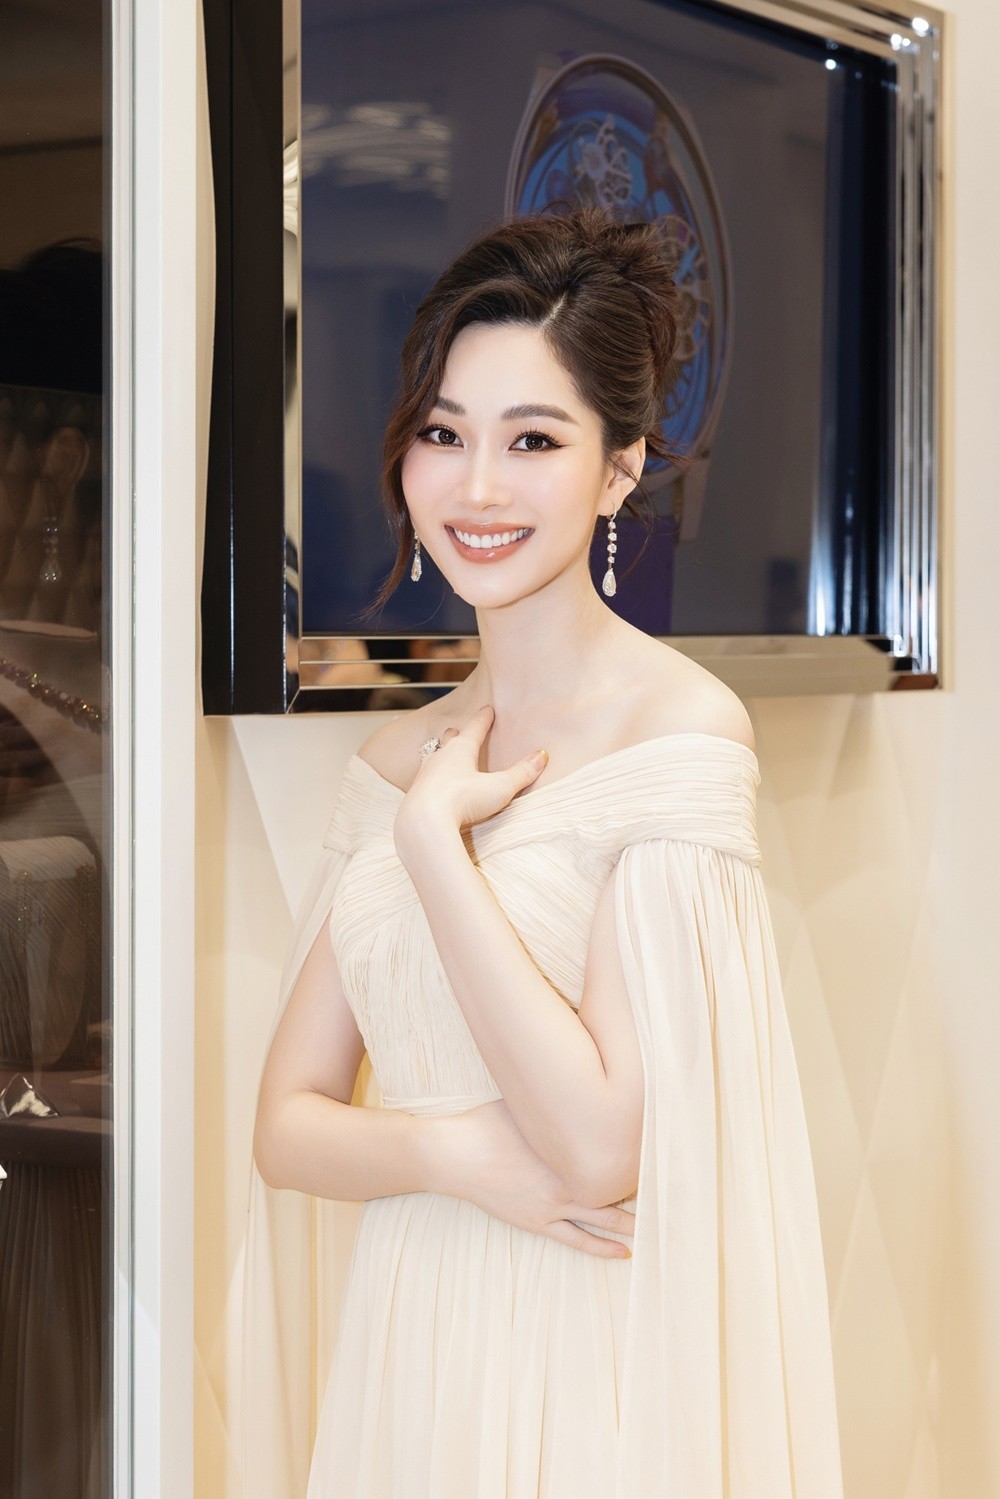 Hoa hậu Đặng Thu Thảo đeo trang sức hơn trăm tỉ đồng, khoe nhan sắc vạn người mê